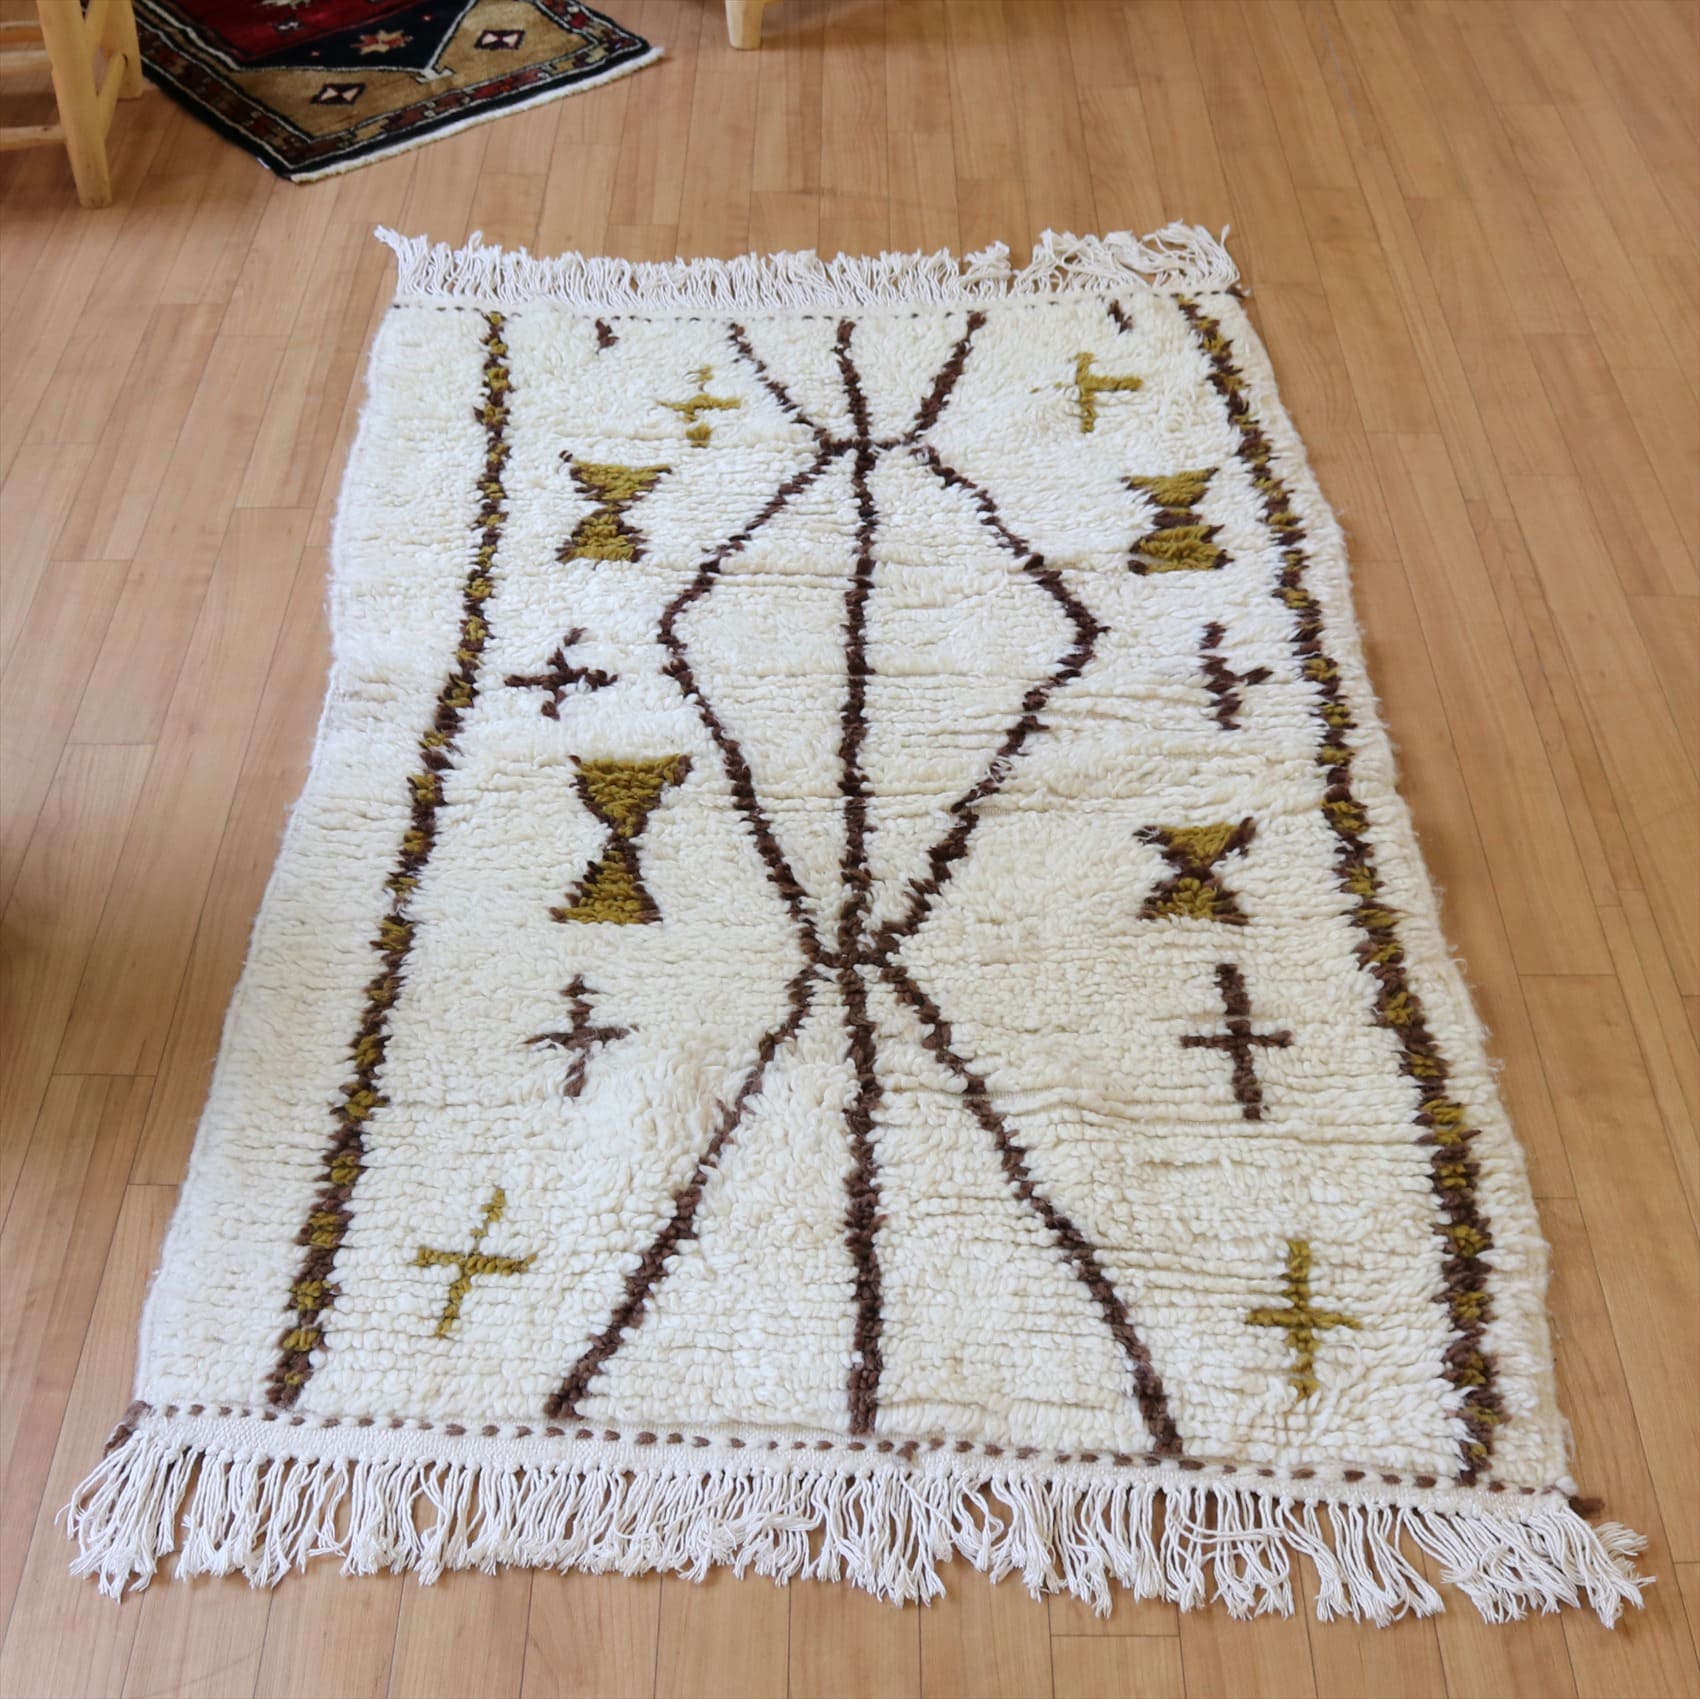 Morroco Berber Rug Azilal142×90cm アズィラル モロッコ ベルベル族の手織りラグ